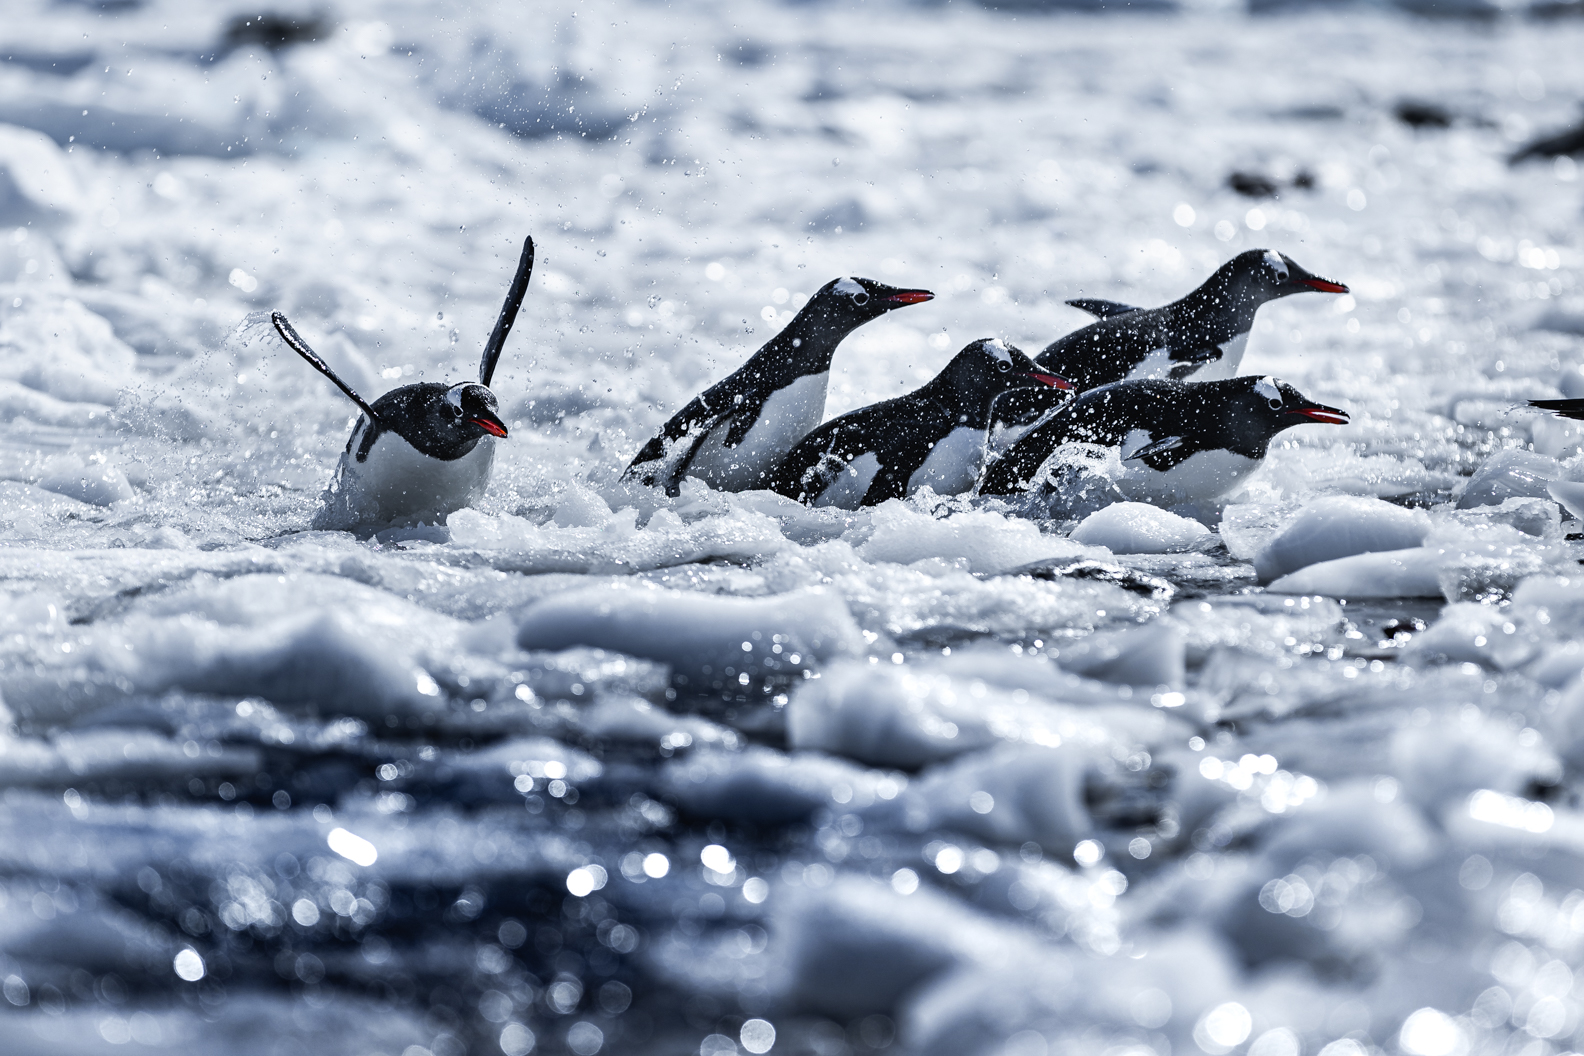 Neko Harbor antarctia porpoising Adelie Penguins porpoising jumping